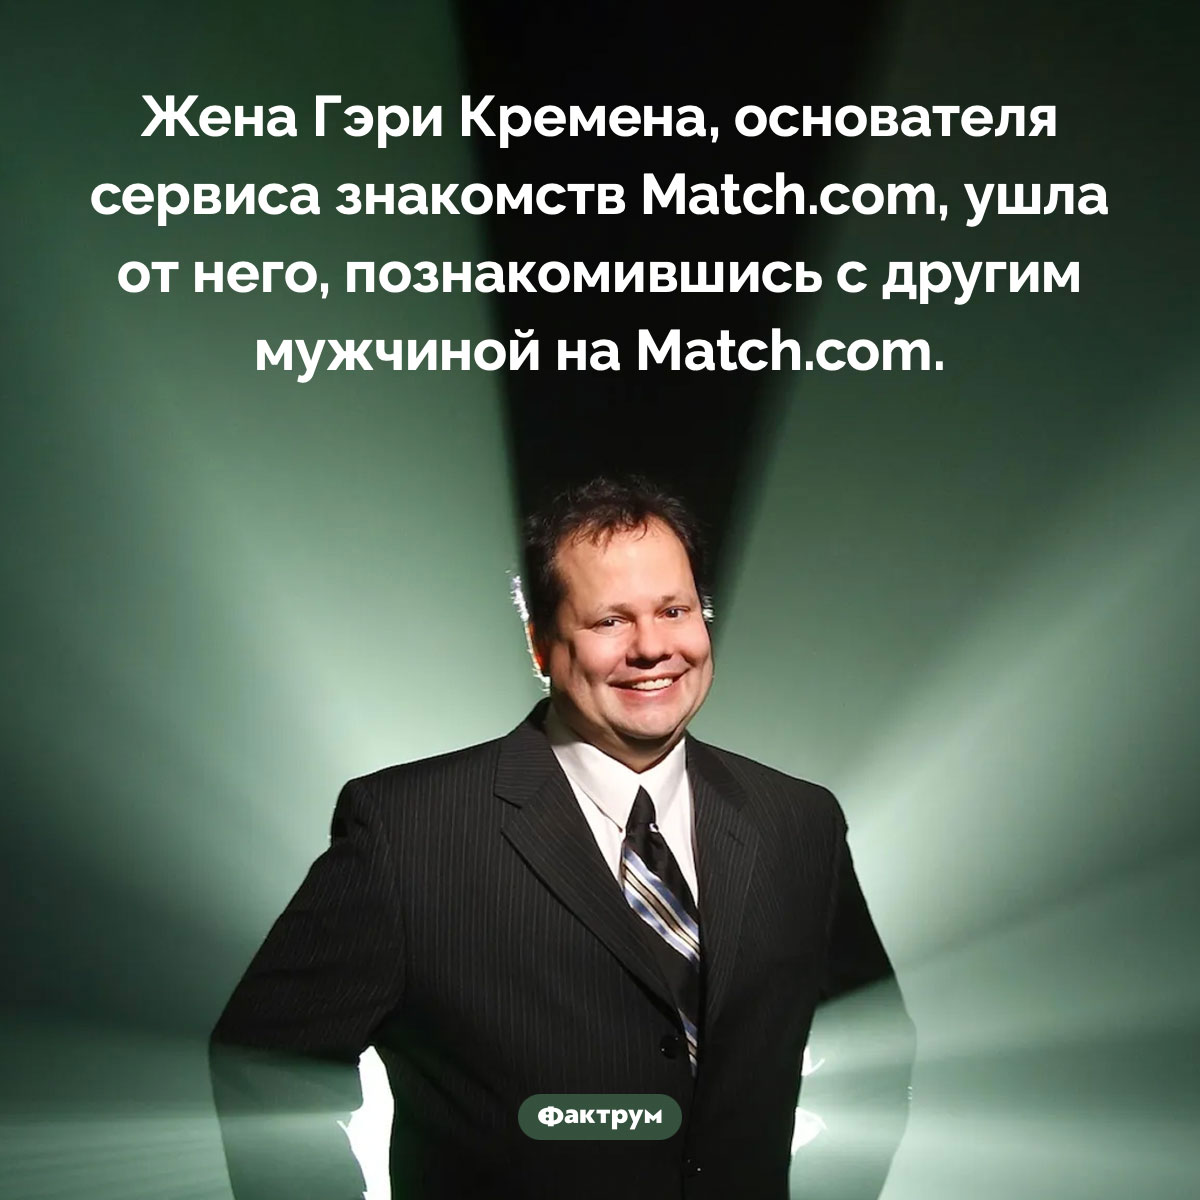 Ирония судьбы основателя Match.com. Жена Гэри Кремена, основателя сервиса знакомств Match.com, ушла от него, познакомившись с другим мужчиной на Match.com.